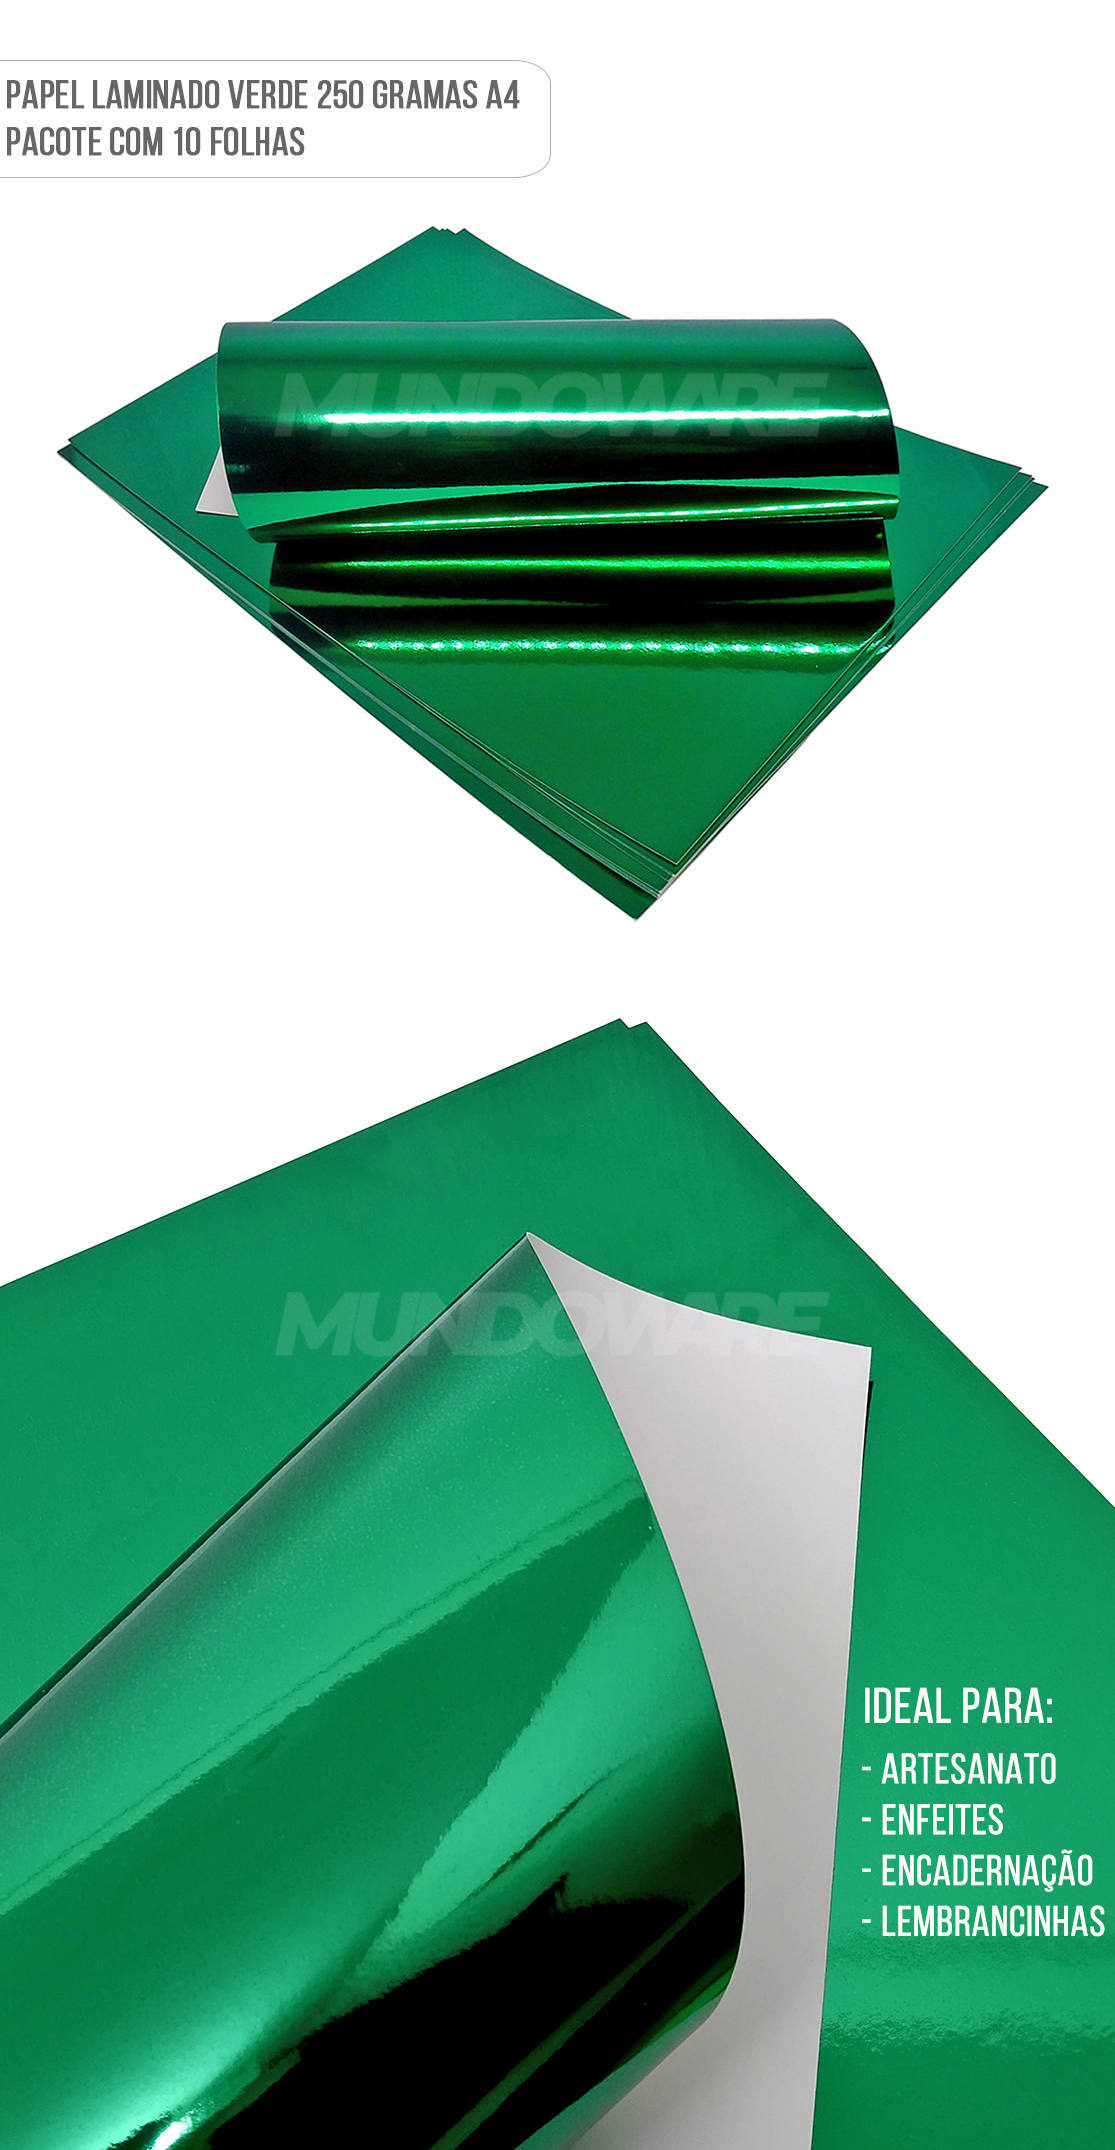 Papel Laminado Verde A4 250g para Artesanato Enfeites Lembrancinhas Pacote com 10 Folhas